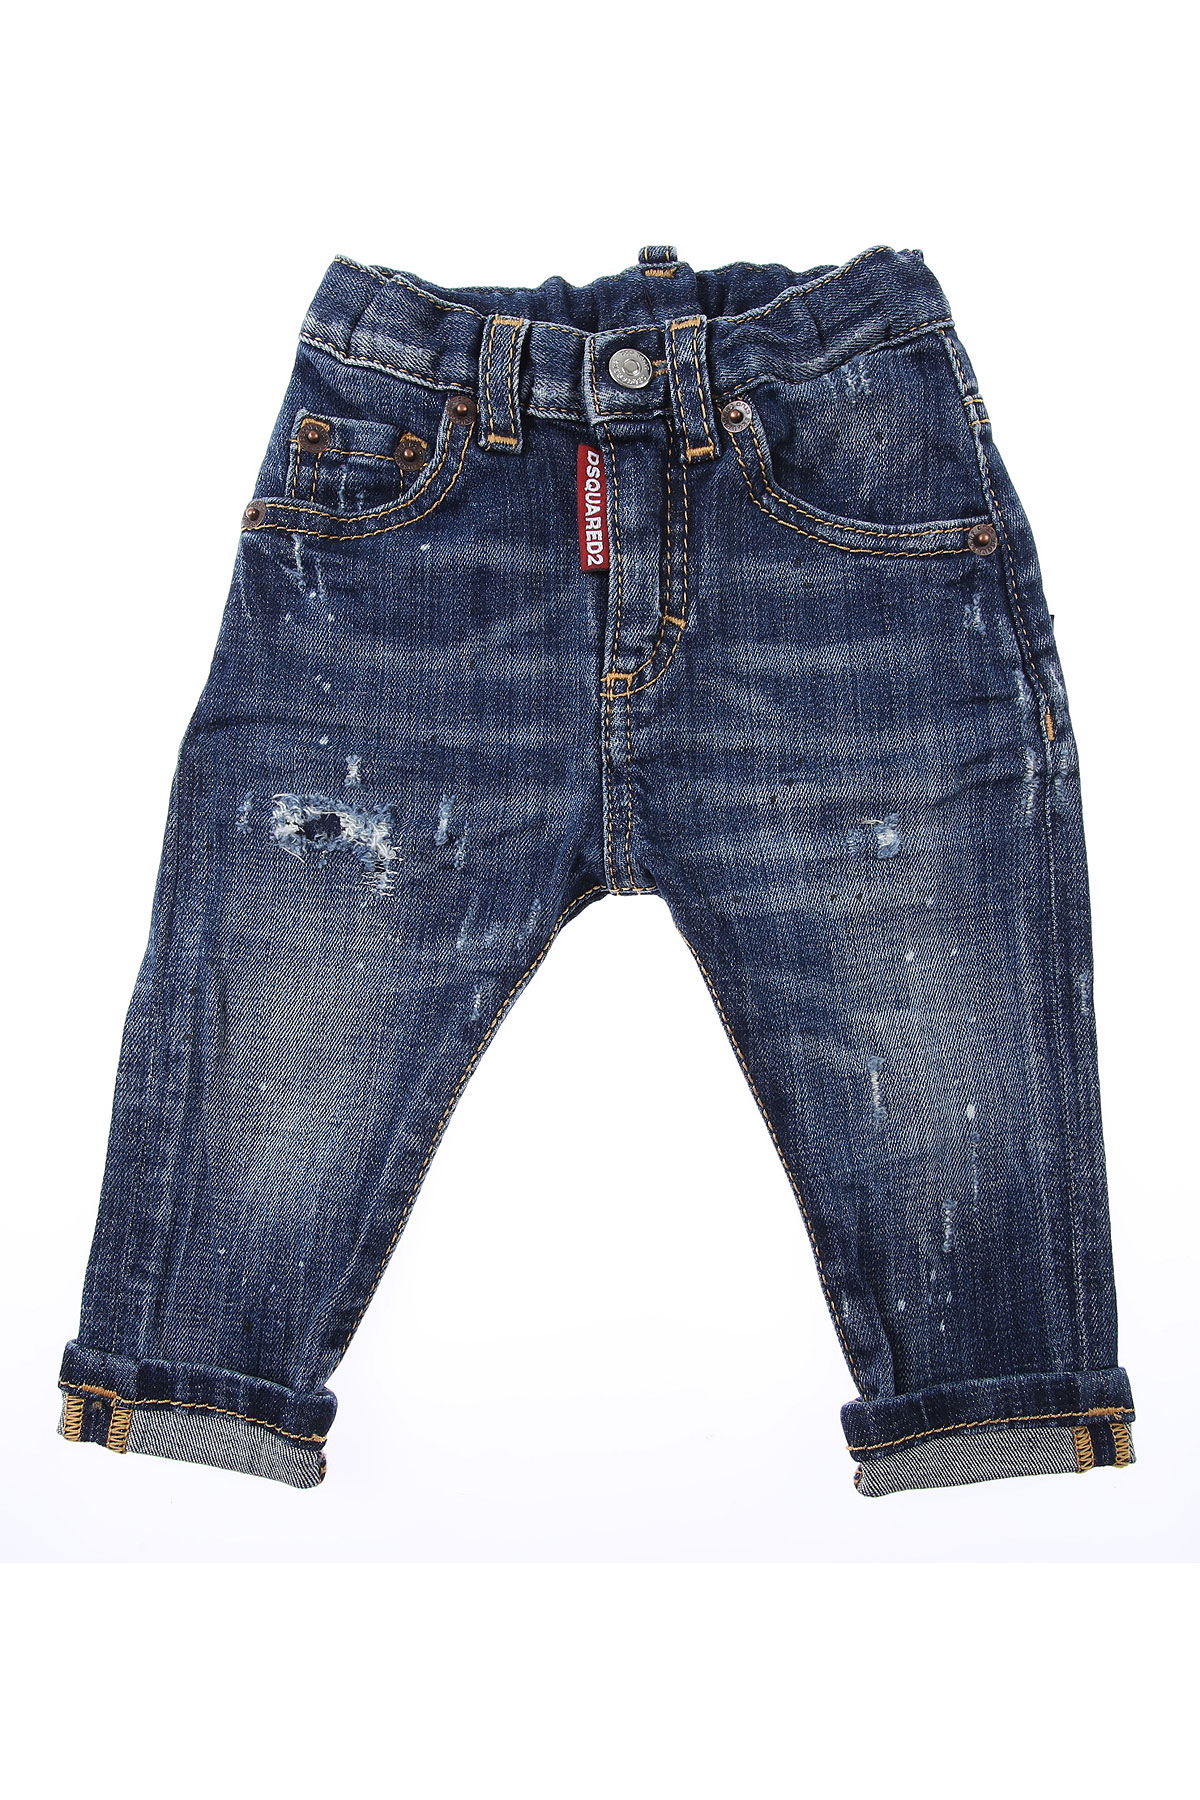 Dsquared Baby Jeans für Jungen Günstig im Sale, Denim- Blau, Baumwolle, 2017, 12 M 18 M 2Y 3Y 6M 9 M